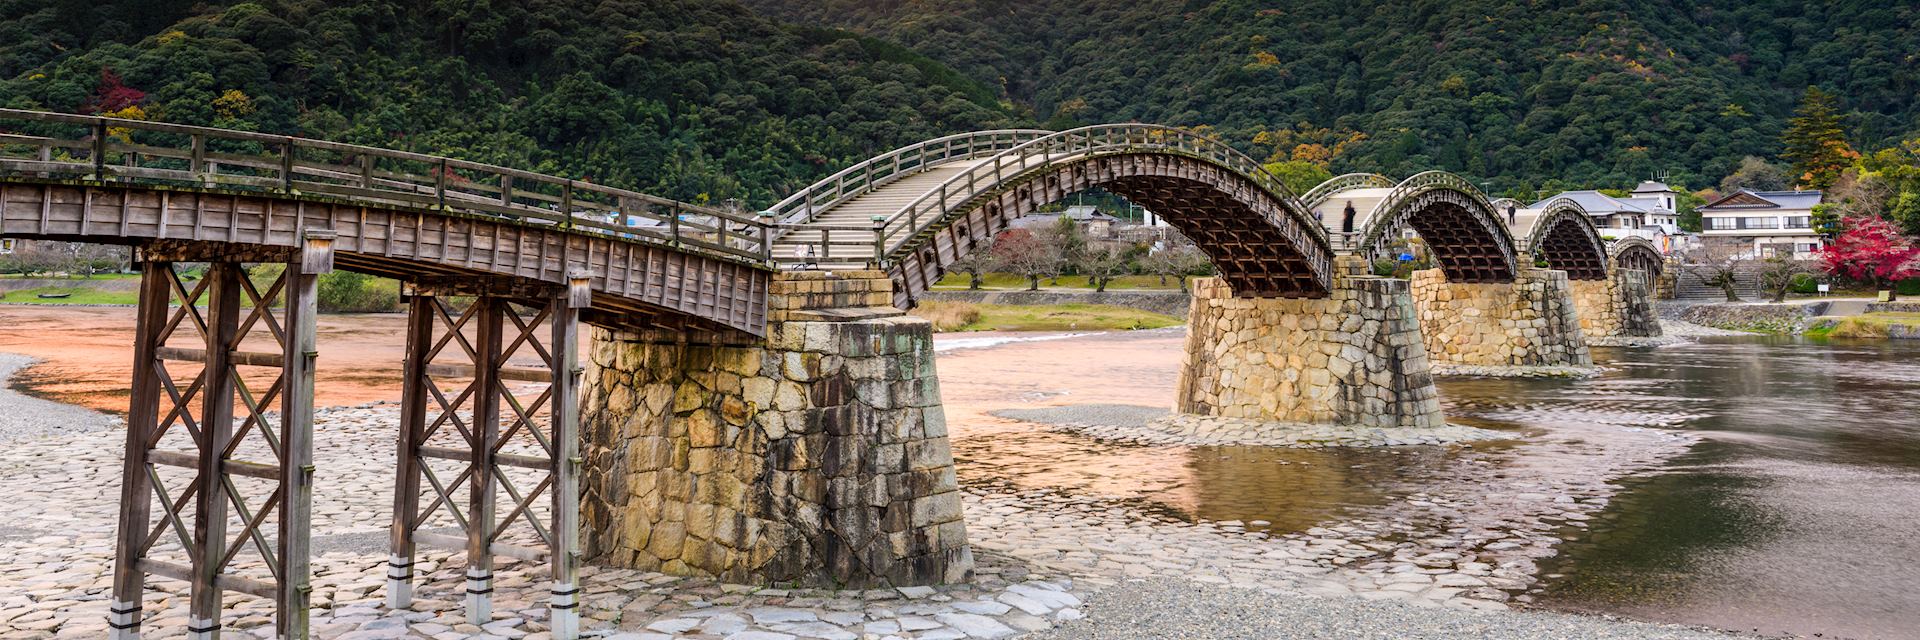 The 17th-century Kintai Bridge in Iwakuni